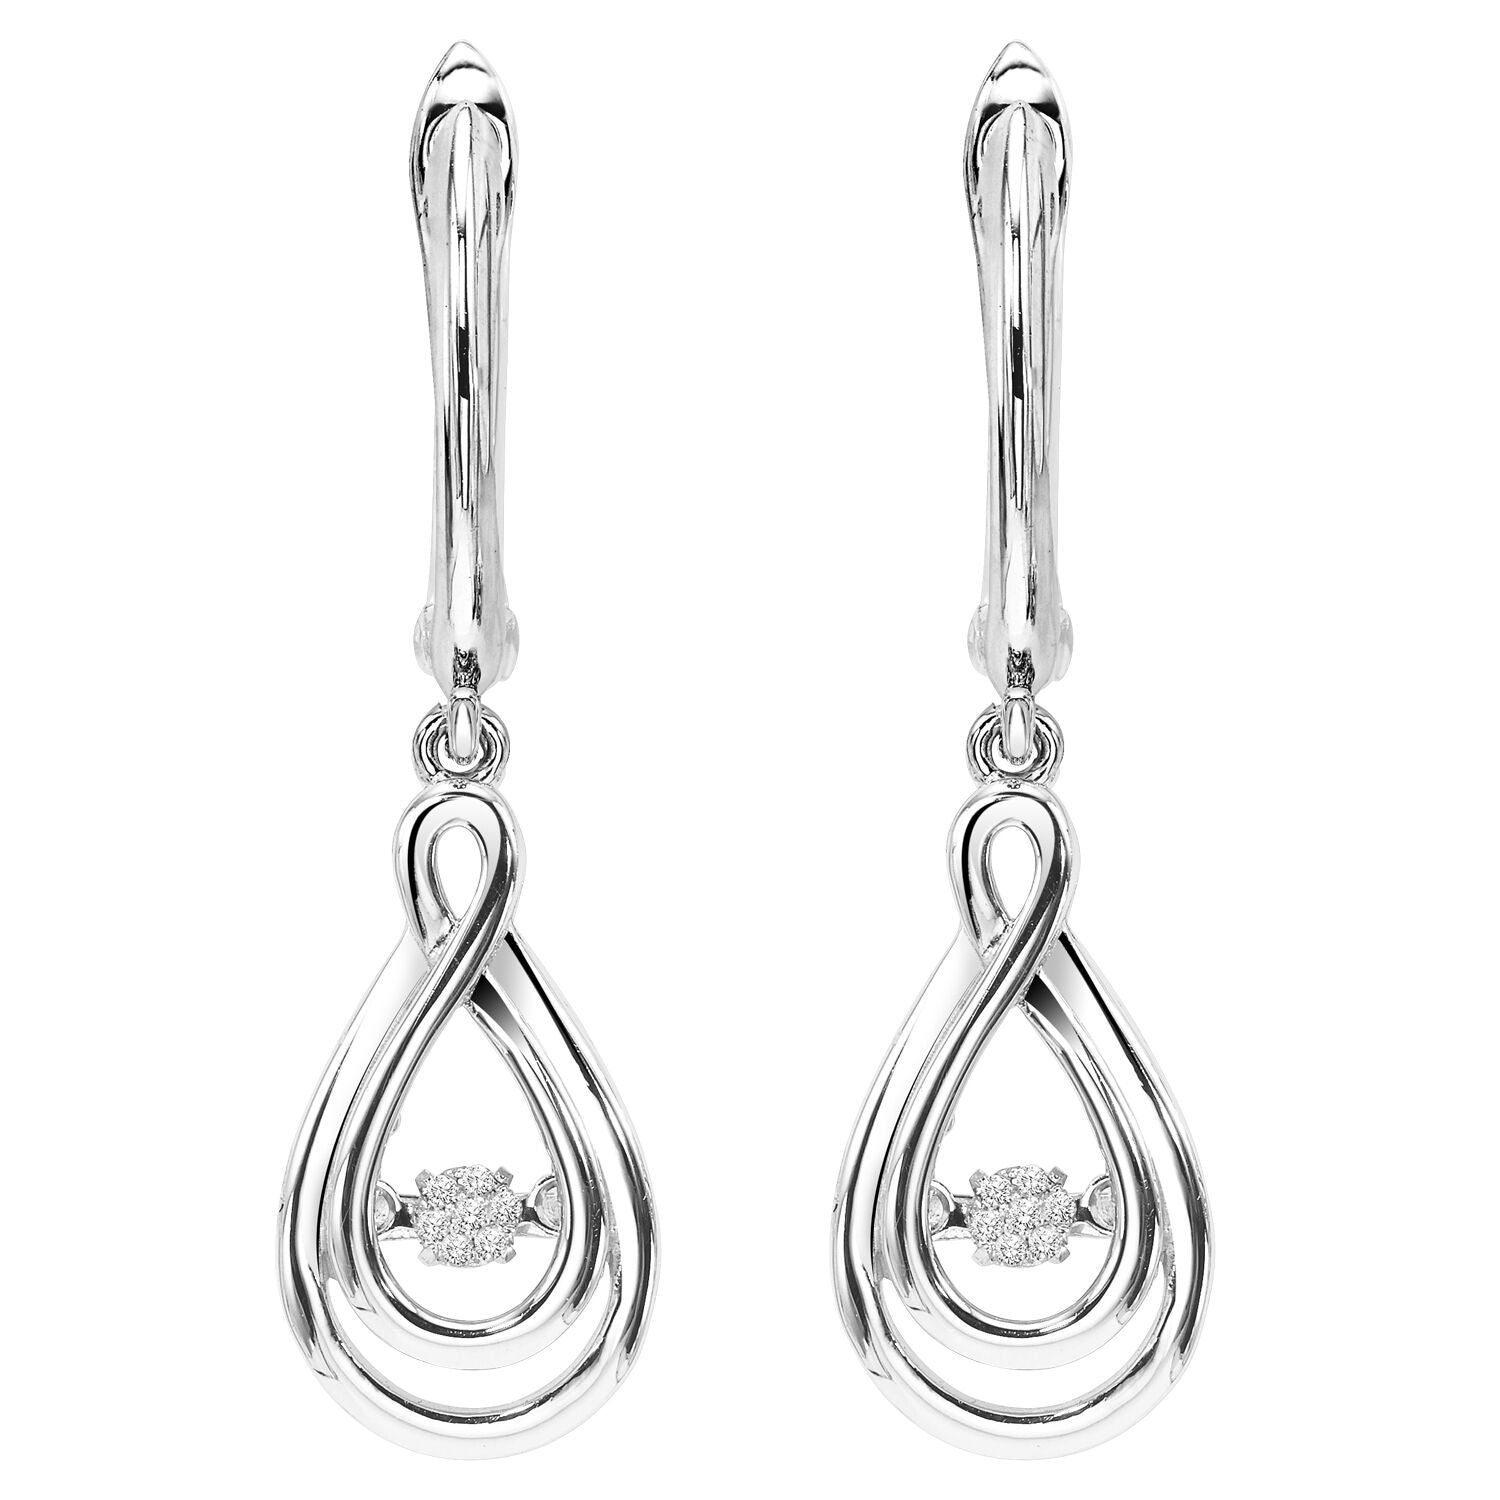 BW James Jewelers Earrings Silver Earrings